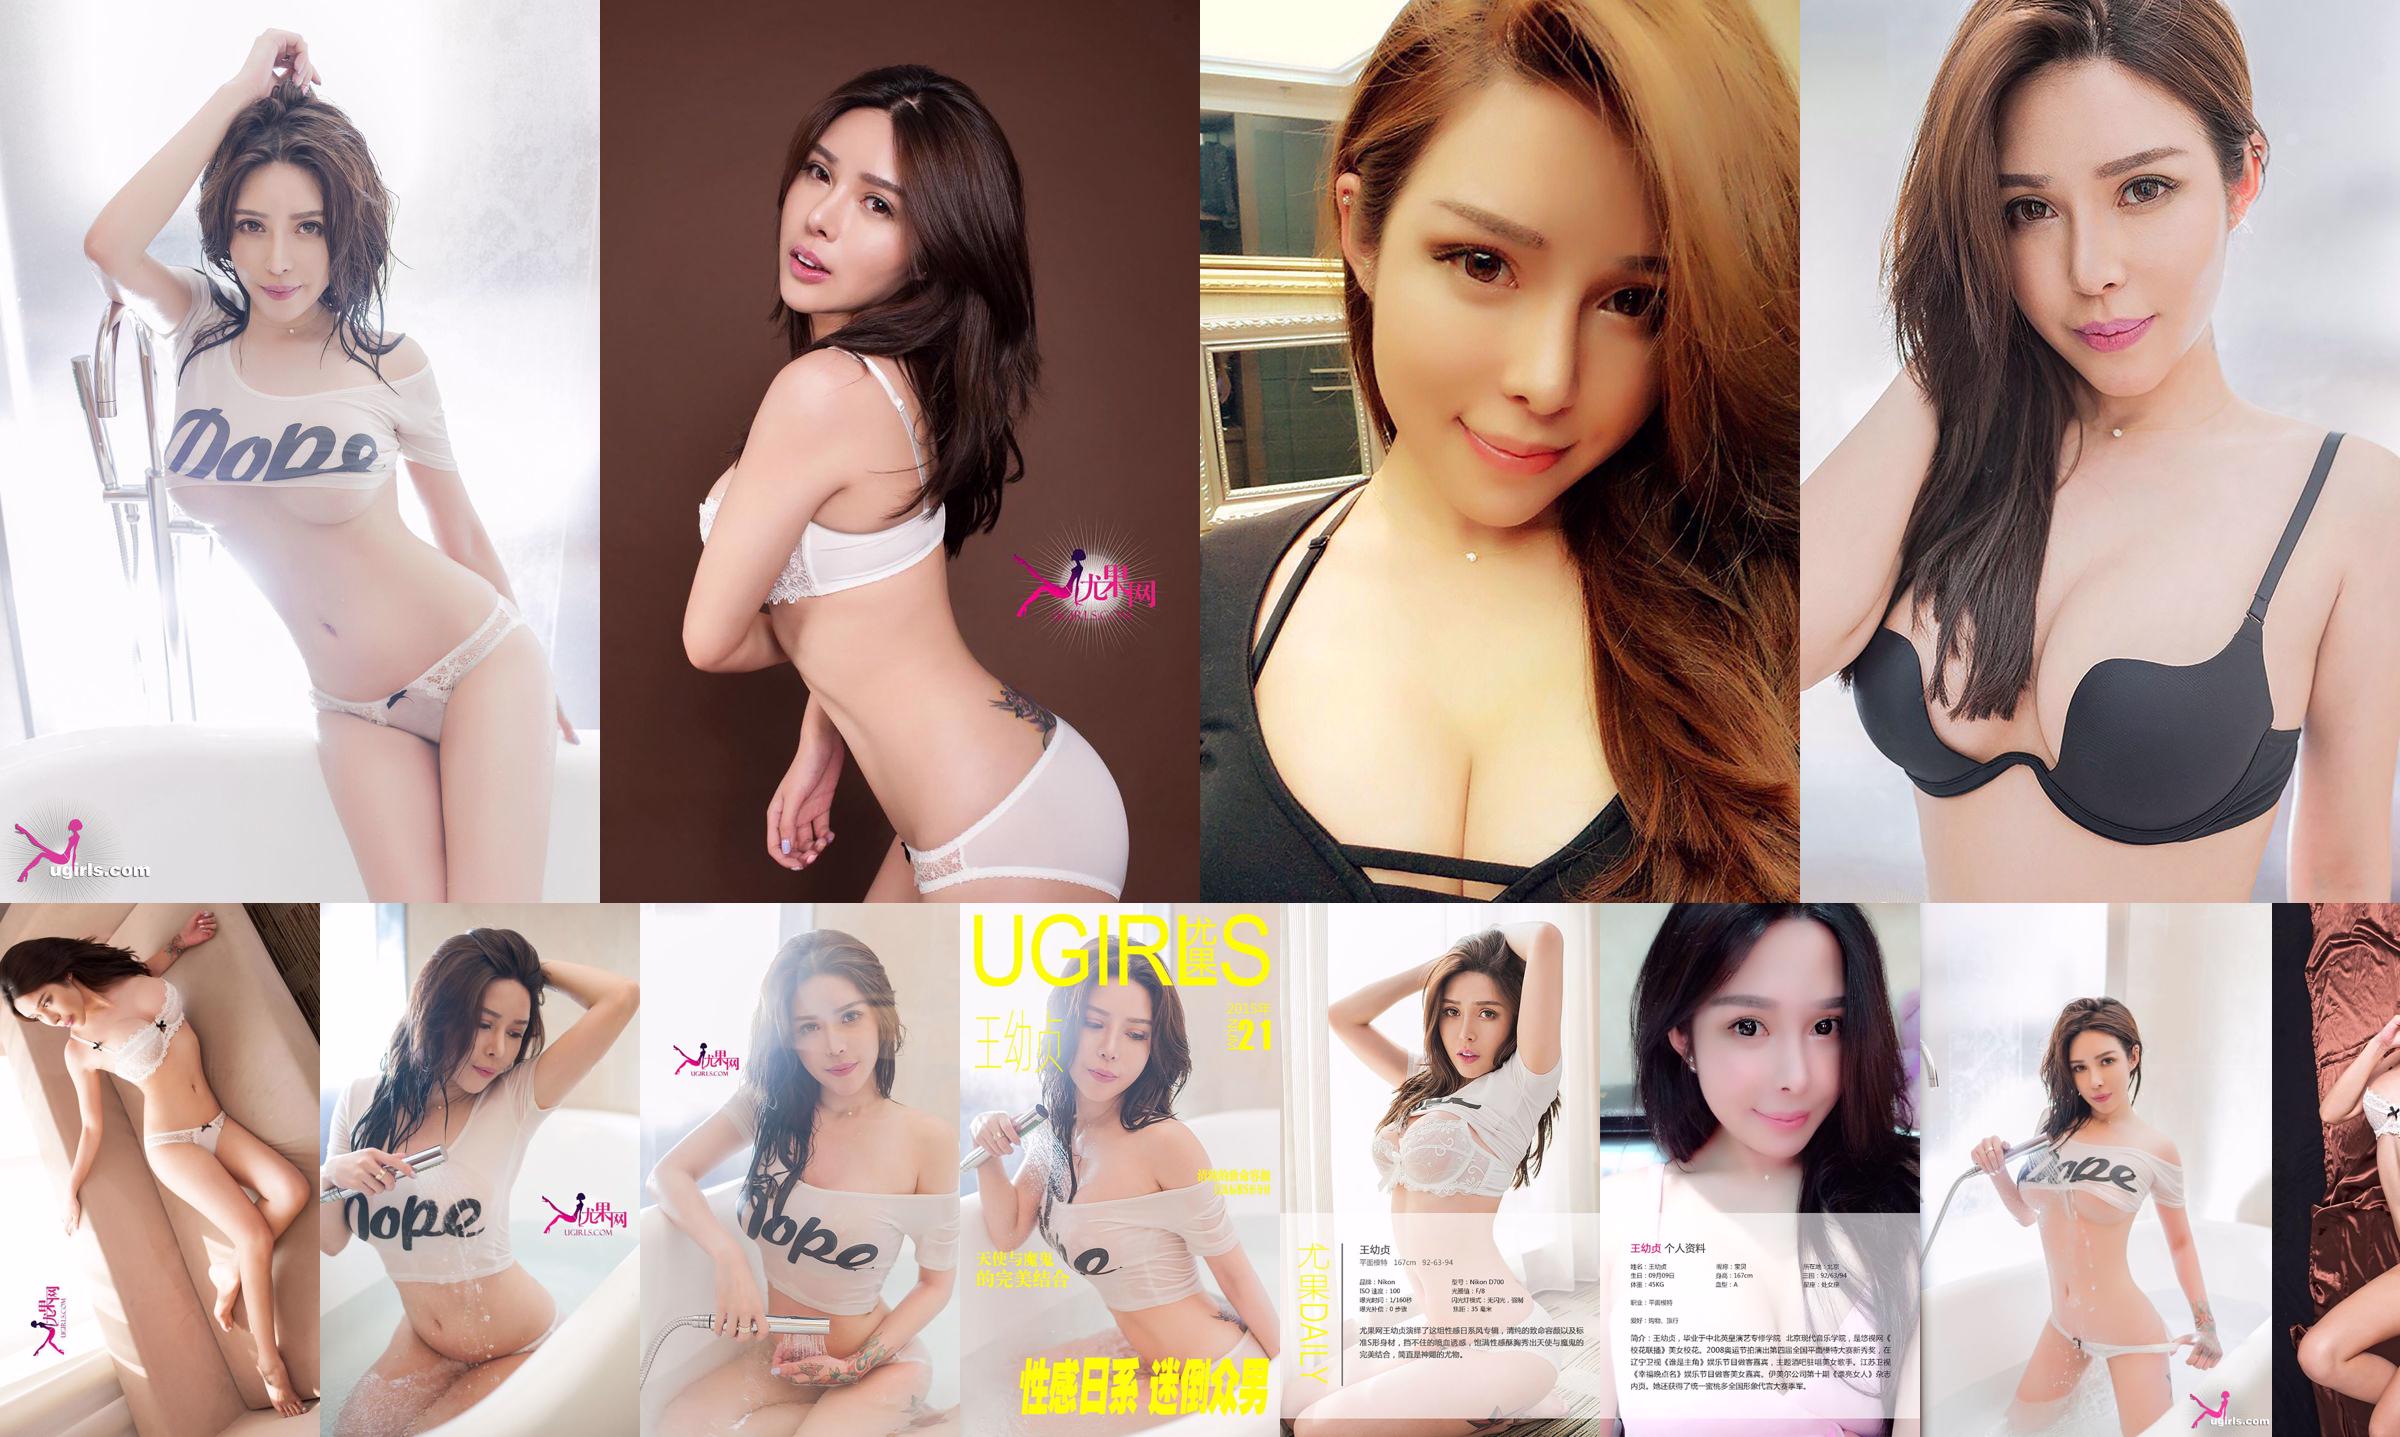 [Youguo Ugirls] E036 Wang Youzhen "Sexy Japanese Style" No.3f718a Page 1